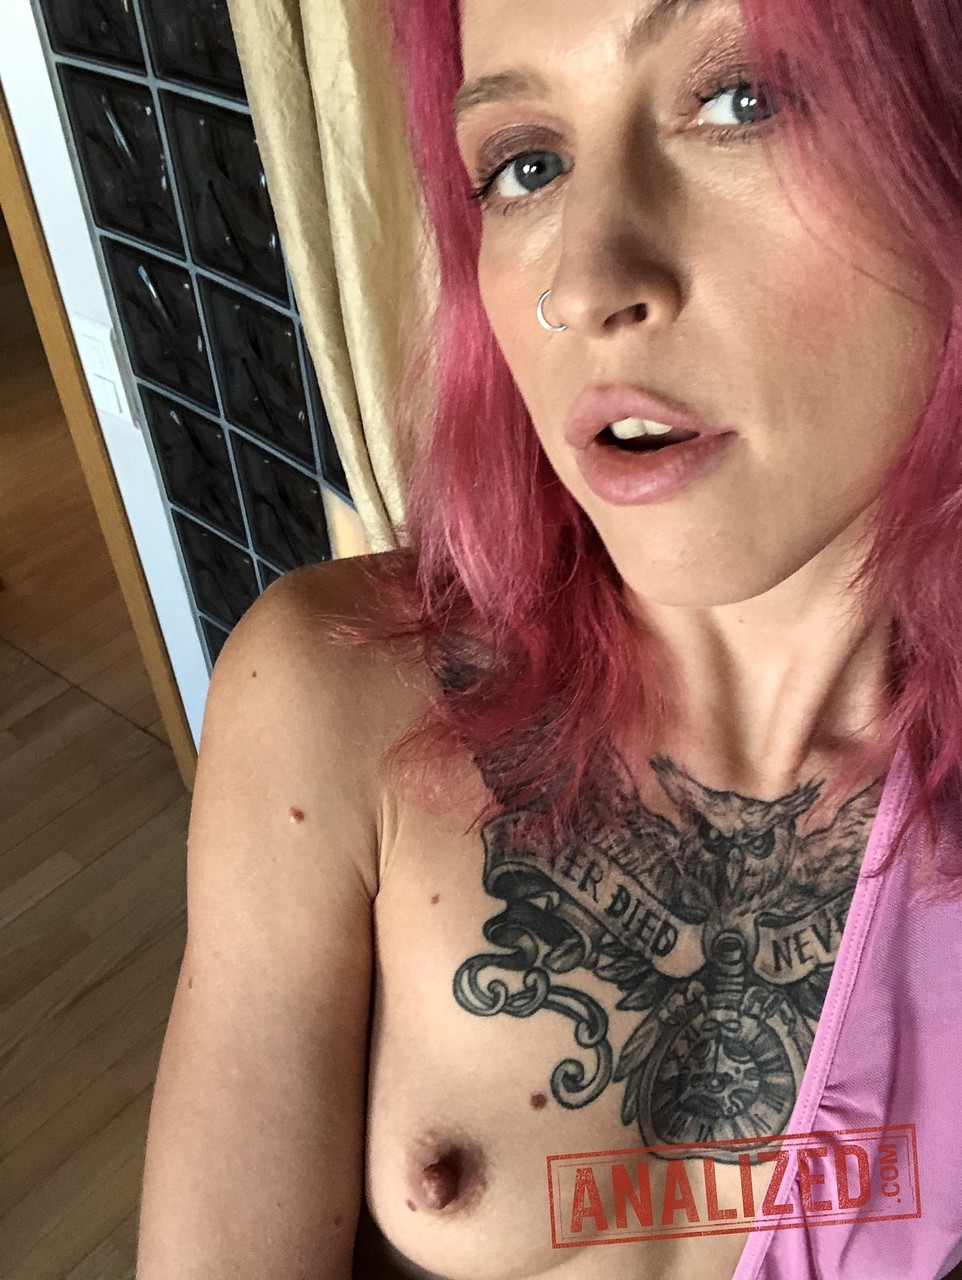 Blonde Eva Stone shows her tits while pink haired mature Yara Phoenix strips 色情照片 #424843965 | Homemade Anal Whores Pics, Eva Stone, Yara Phoenix, Homemade, 手机色情